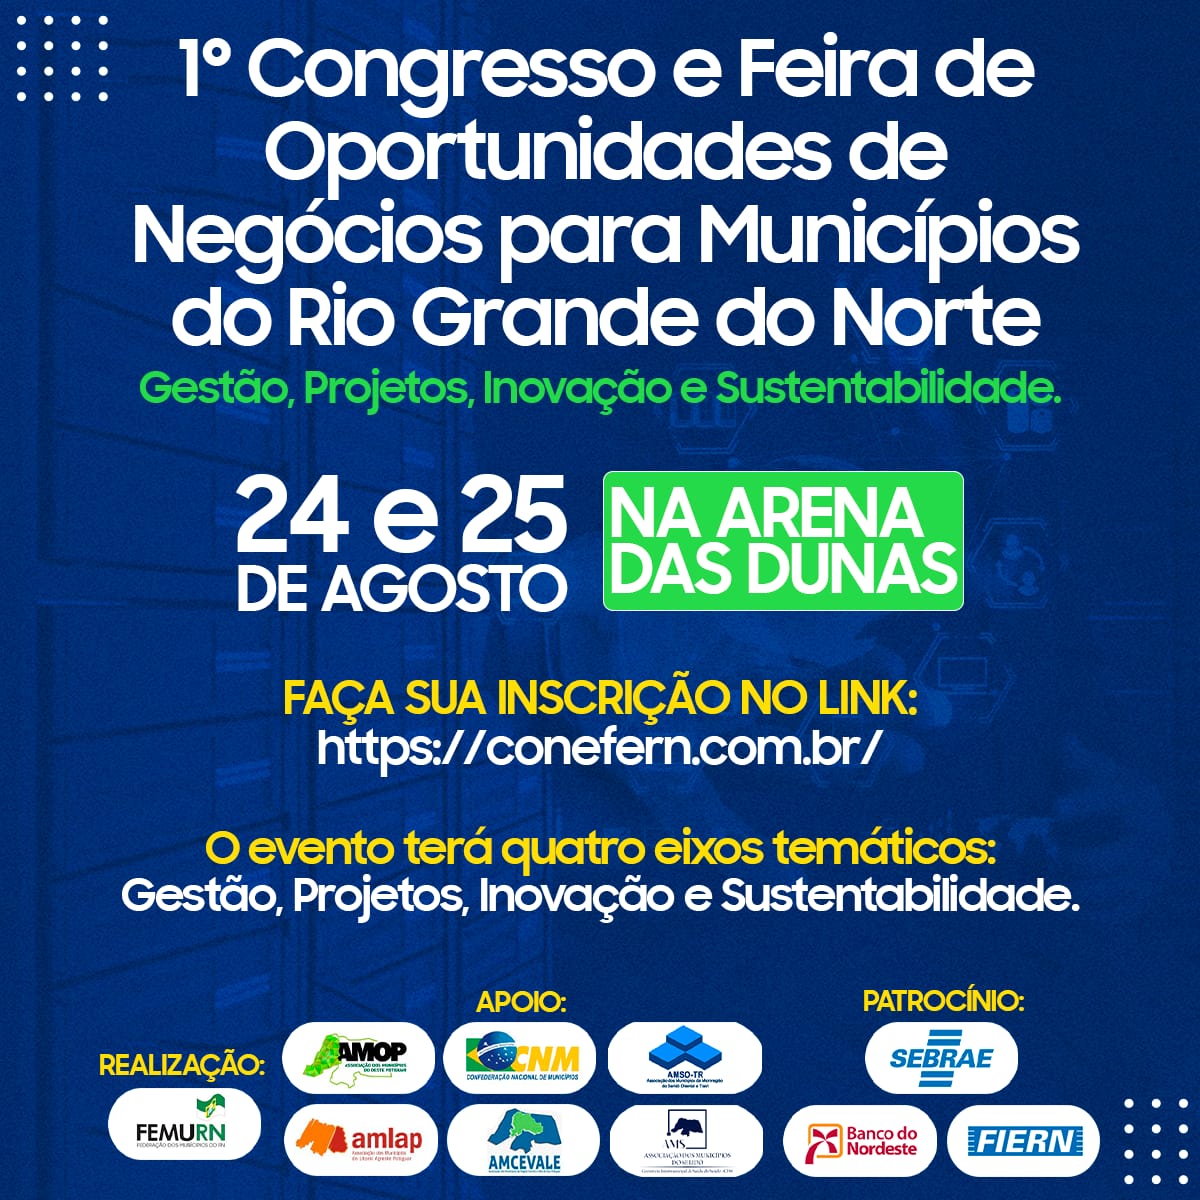 FEMURN realizará 1° Congresso e Feira de Oportunidades de Negócios para Municípios do RN